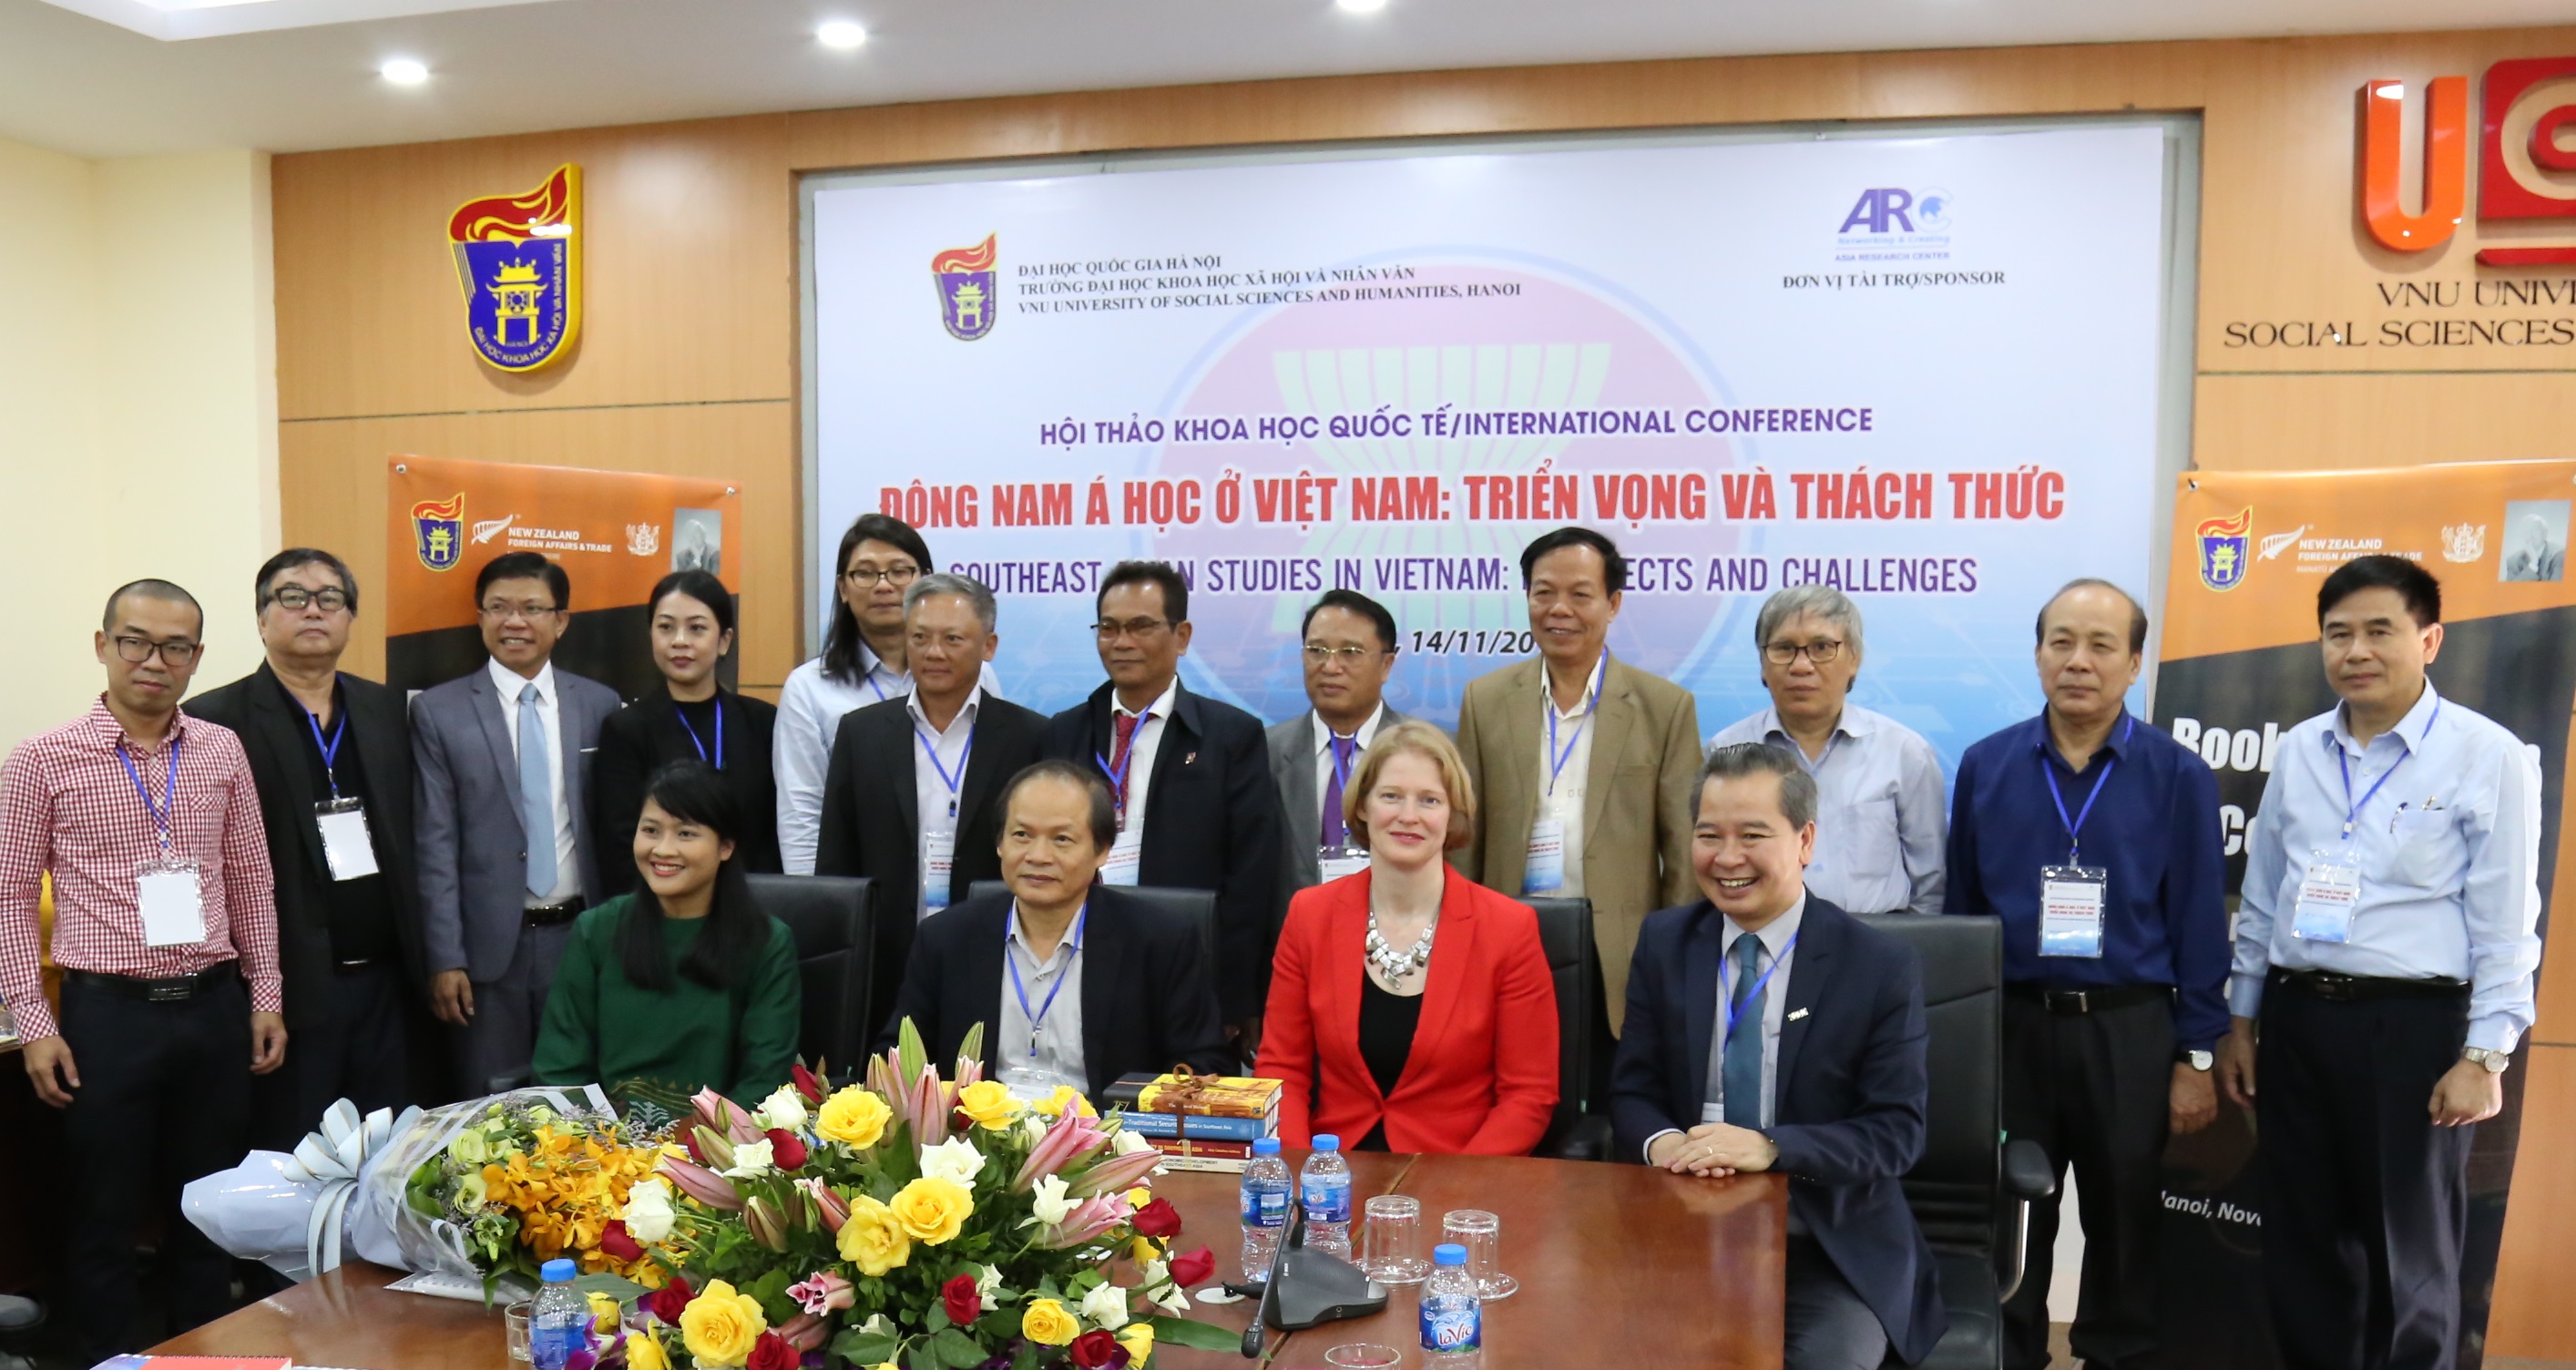 Hội thảo “Đông Nam Á học ở Việt Nam: Triển vọng và thách thức”